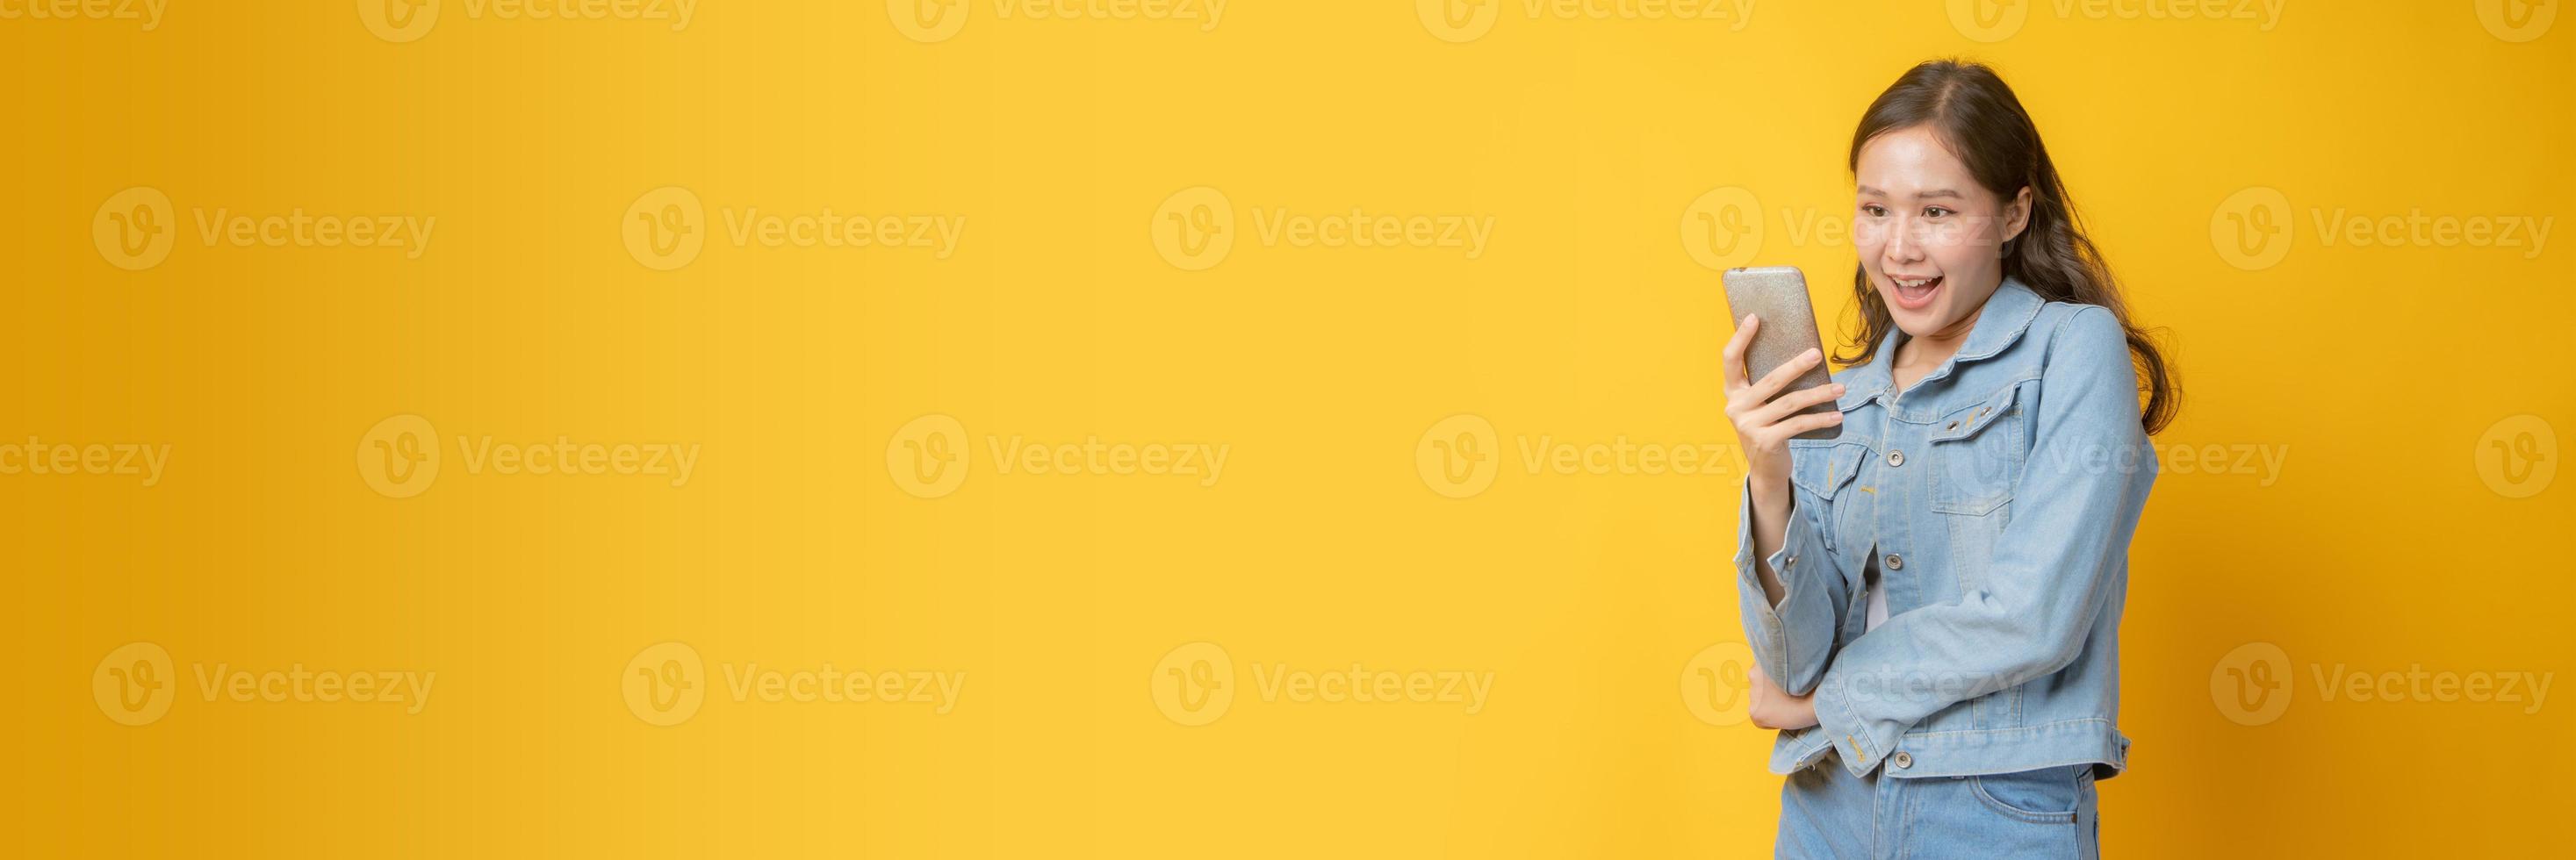 femme asiatique, sourire, et, regarder, téléphone portable, sur, fond jaune photo